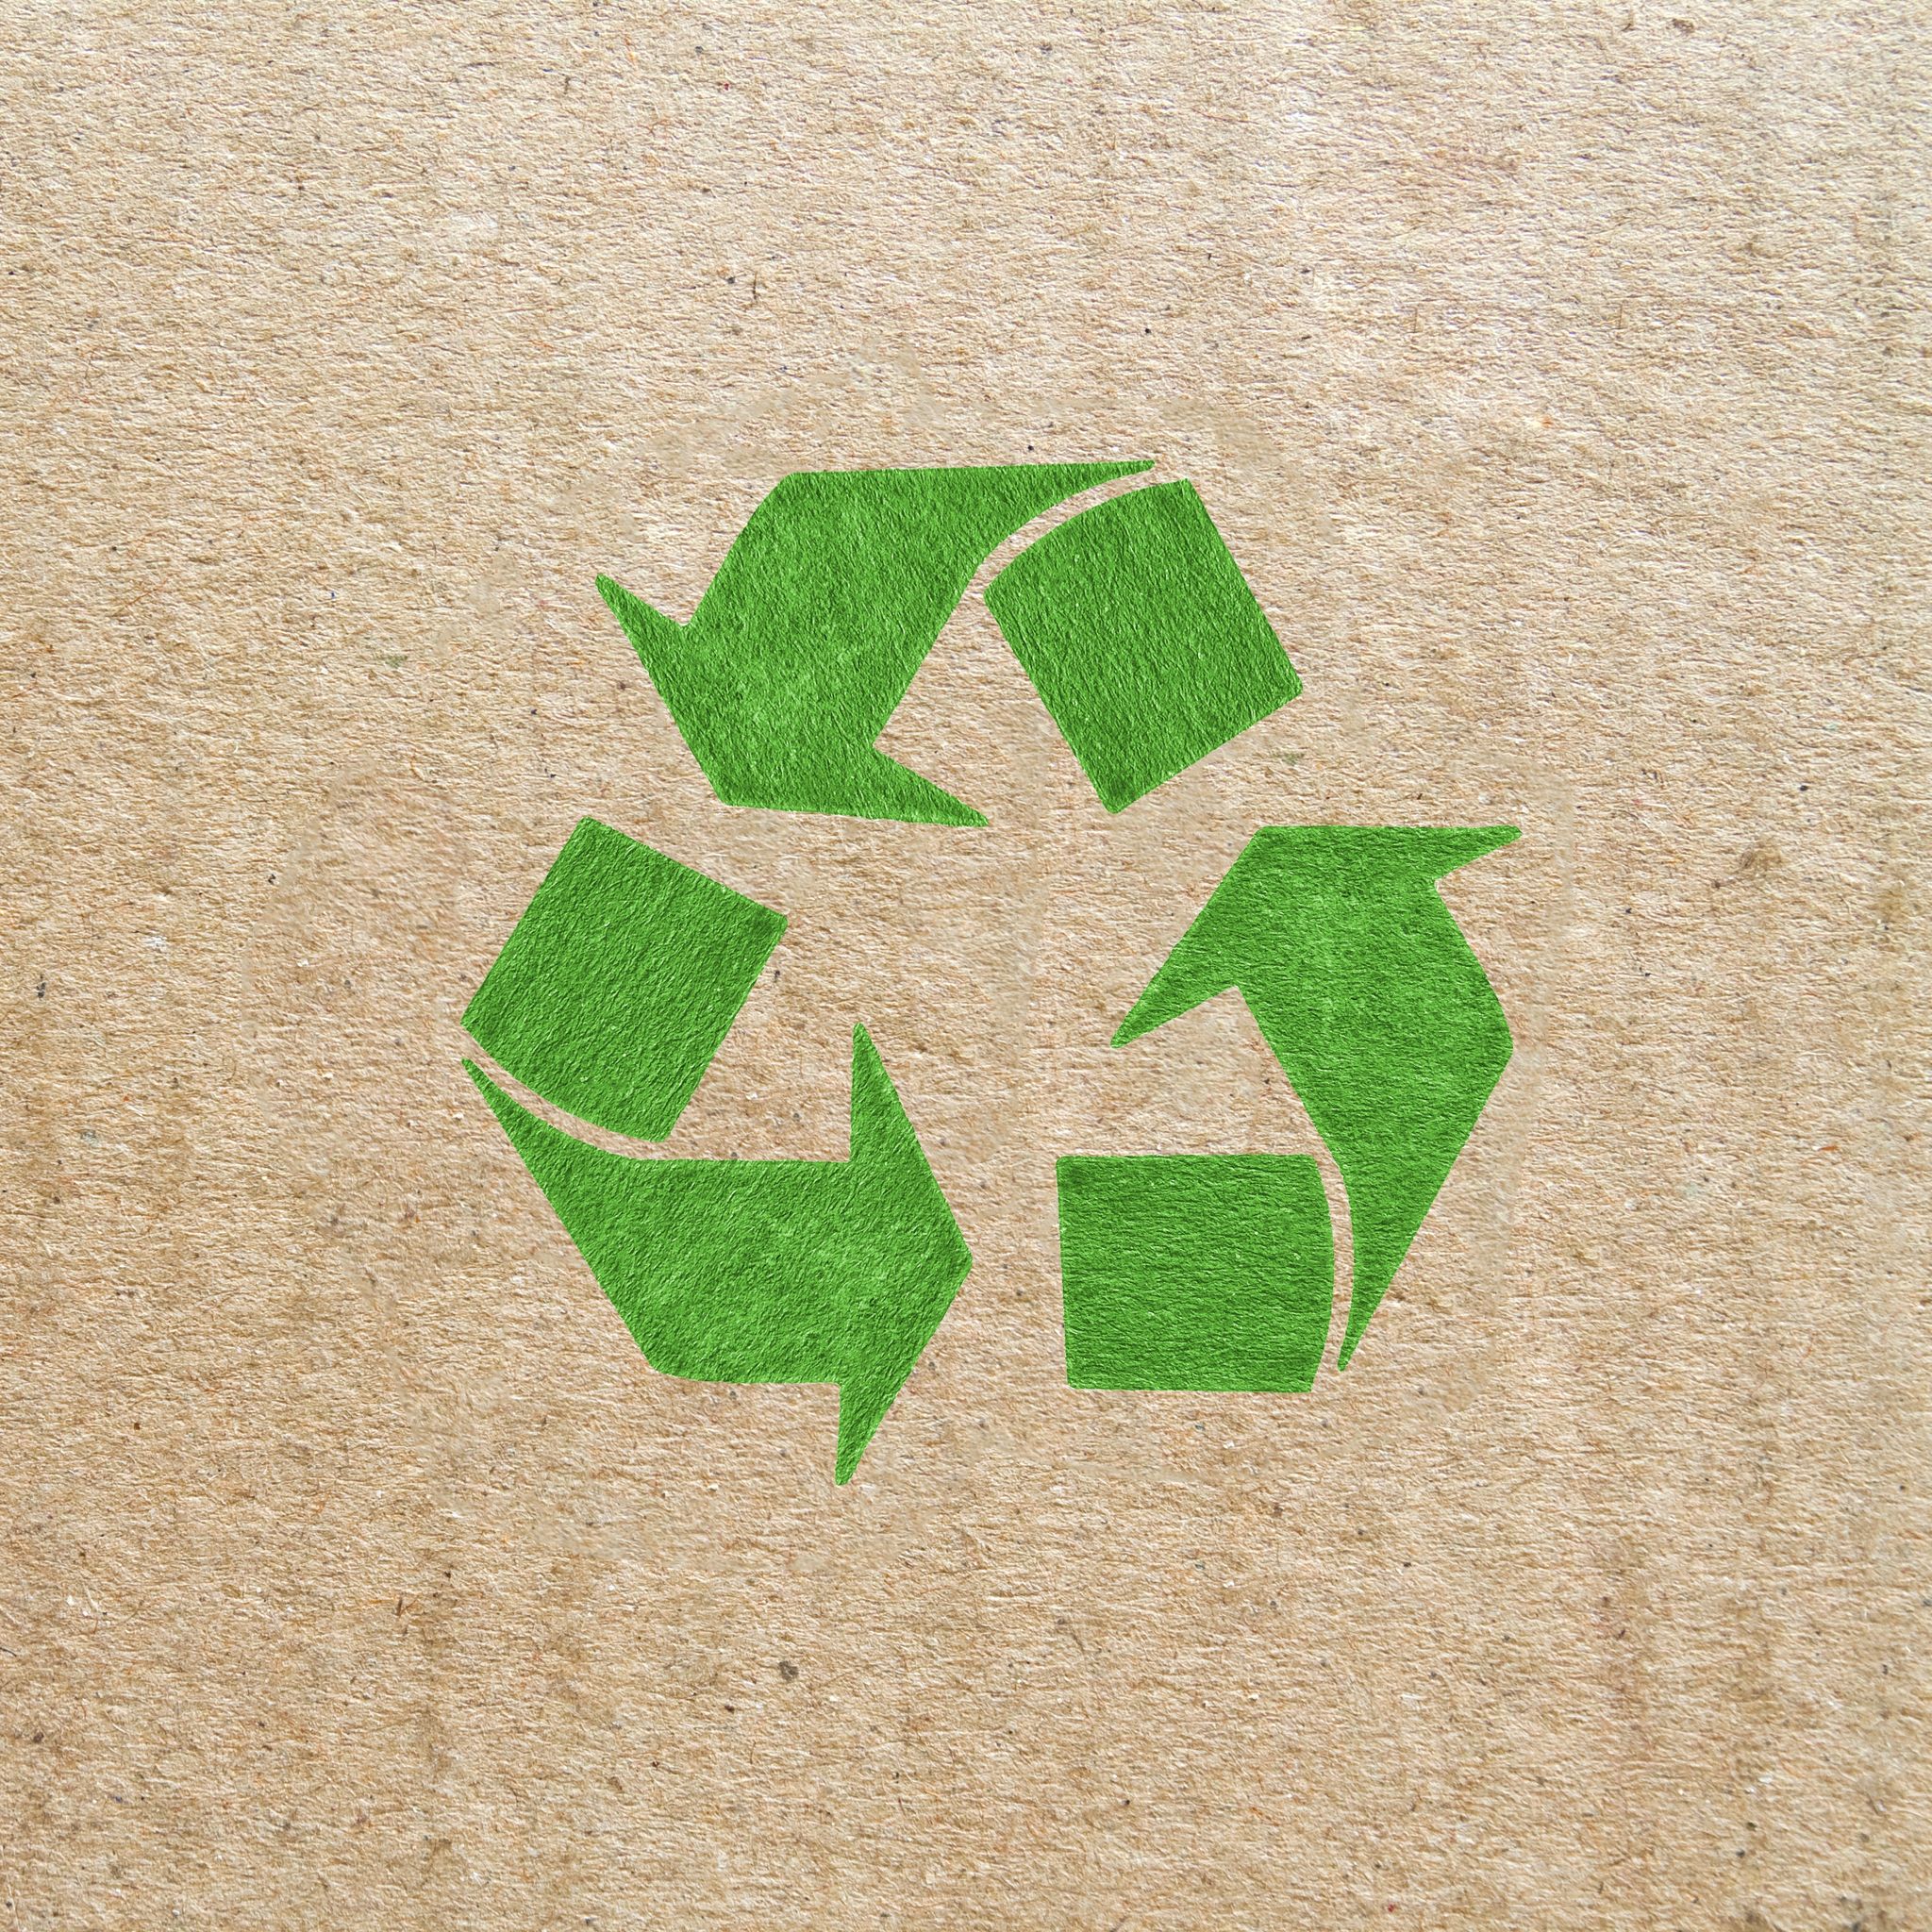 Рисунок переработки. Символ переработки Recycling. Переработка бумаги. Переработка бумаги и картона.